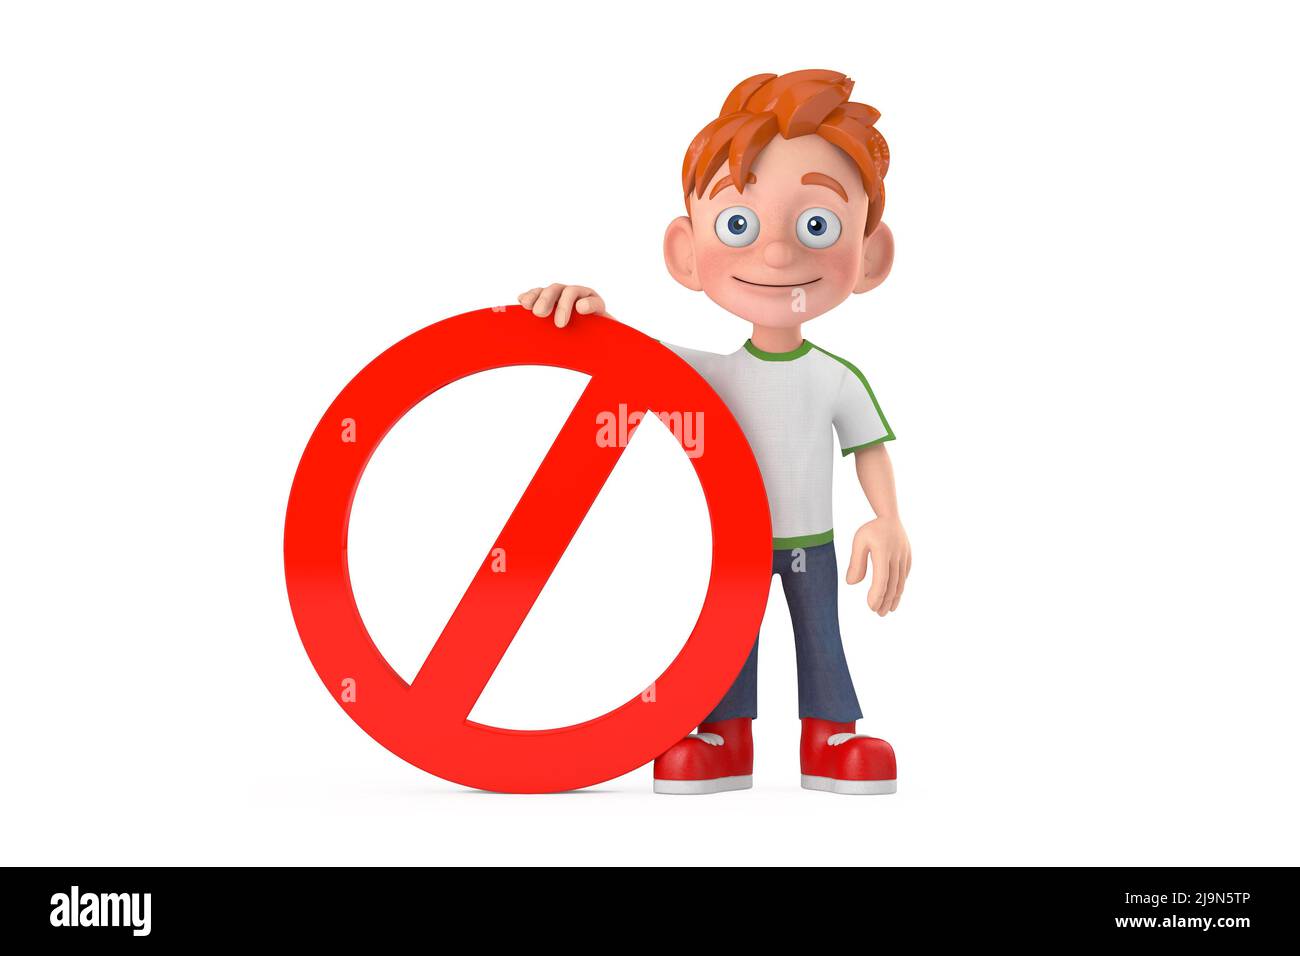 Cartoon kleiner Junge Teen Person Charakter Maskottchen mit mit rotem Verbot oder Verbotene Zeichen auf einem weißen Hintergrund. 3D Rendering Stockfoto